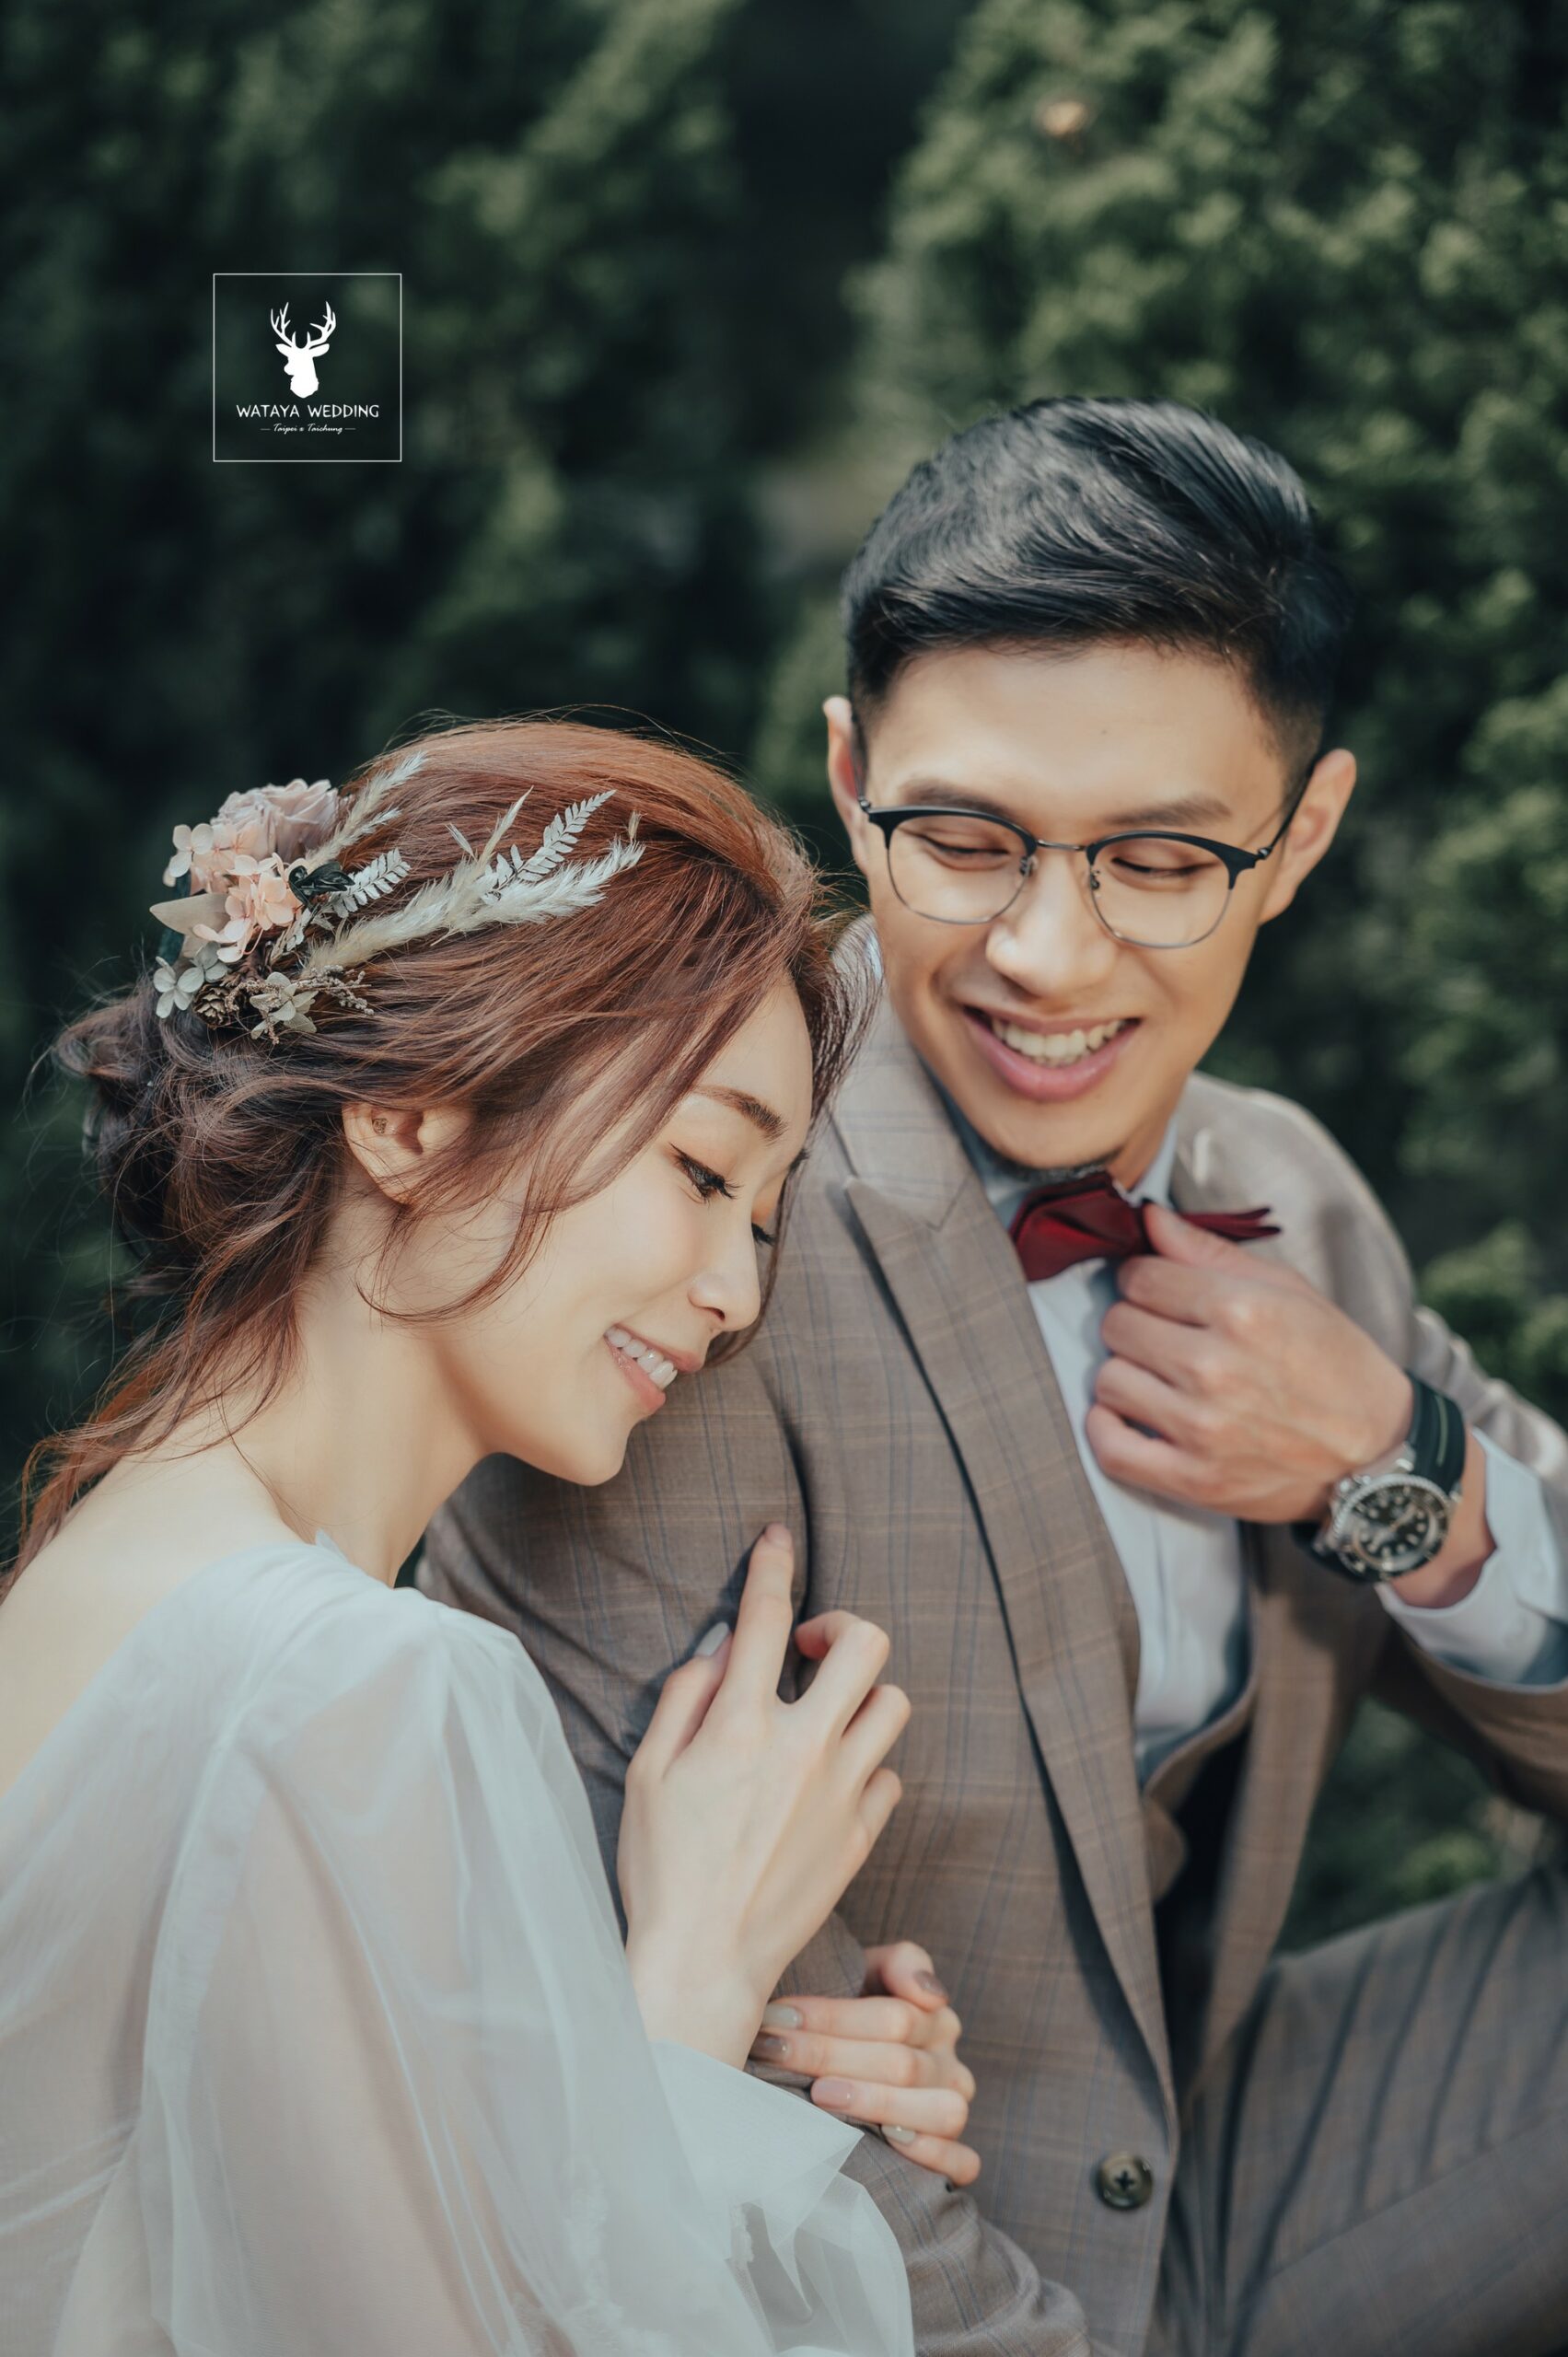 綿谷結婚式-婚紗攝影作品 (5)